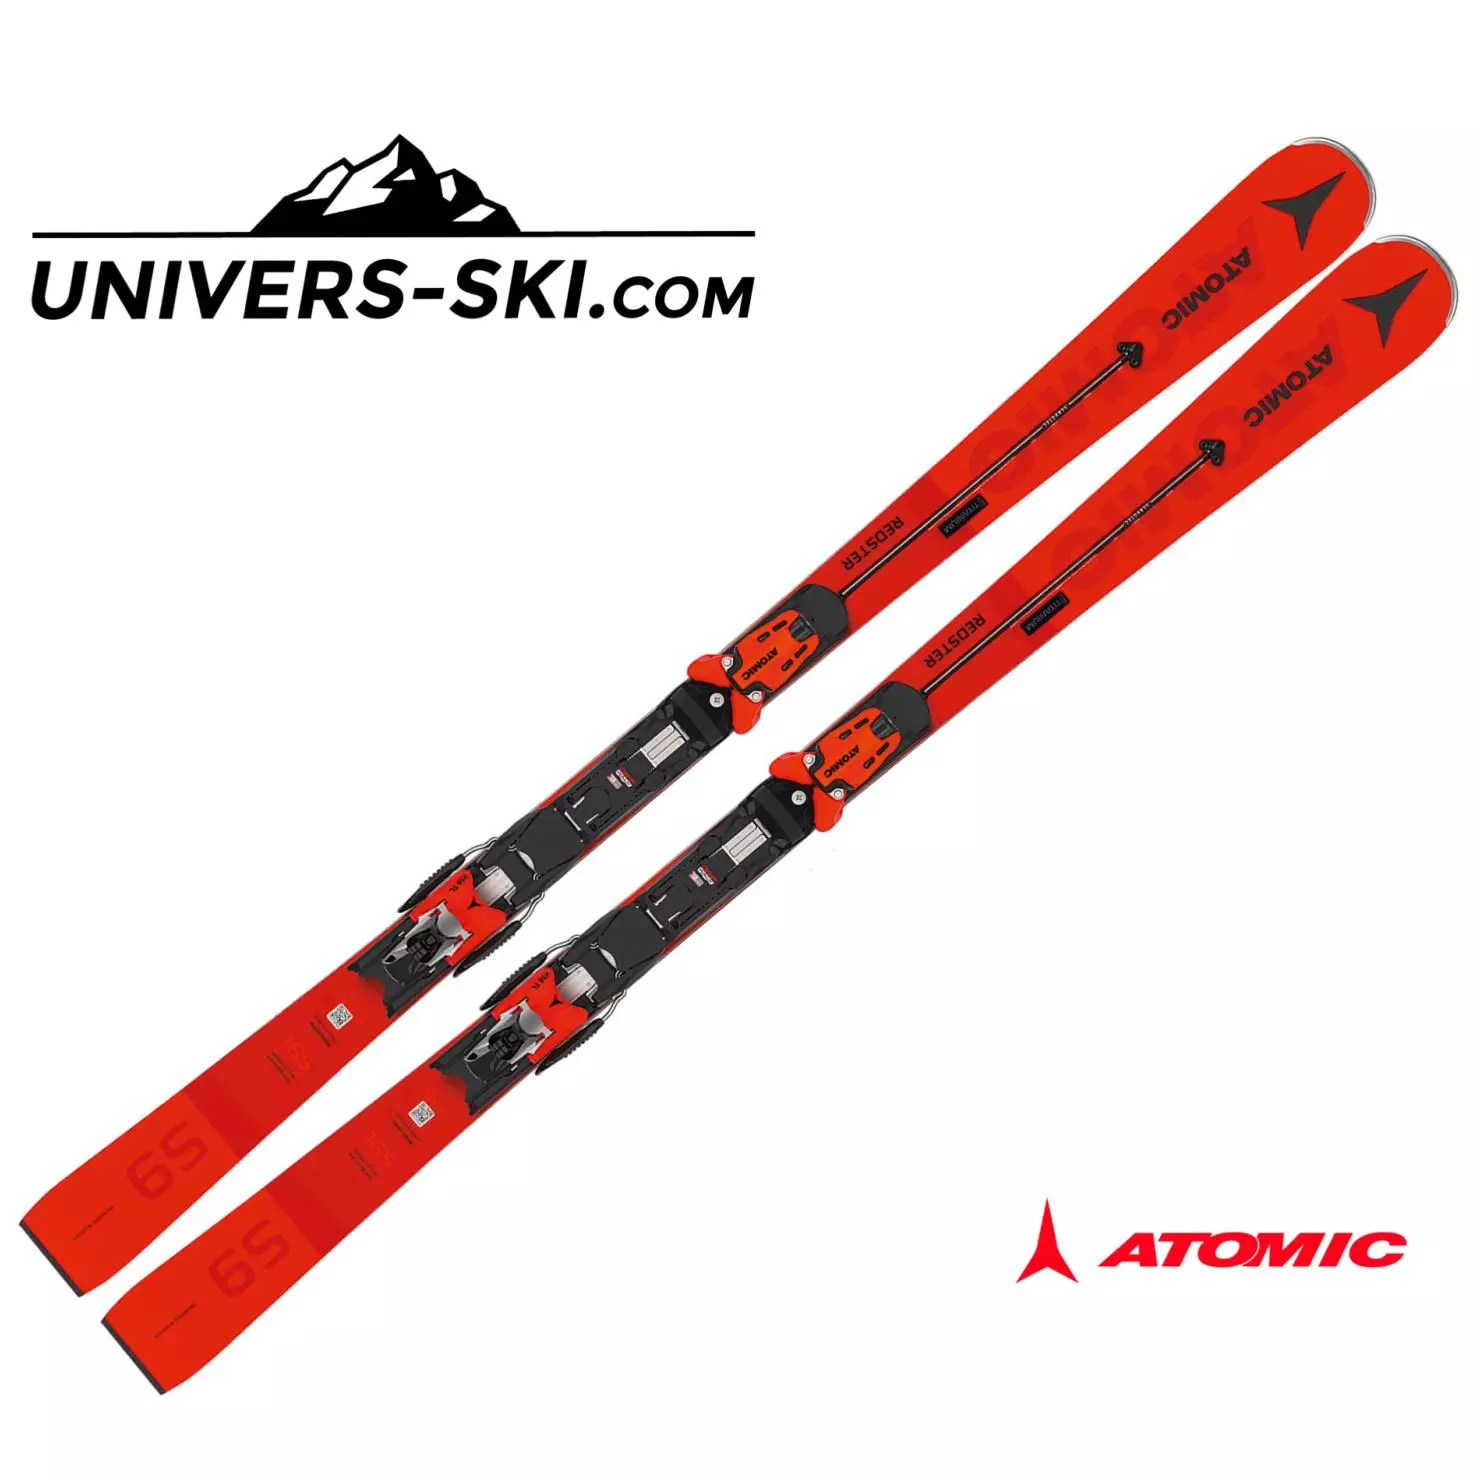 Ski Atomic: Cross-Cross, Mountain and Ice Skating. Zazakely, ny skis vehivavy sy ny lehilahy, ny fanamarihany. Ahoana ny fomba hisafidianana ny skiing matihanina amin'ny lanjany? 8387_25